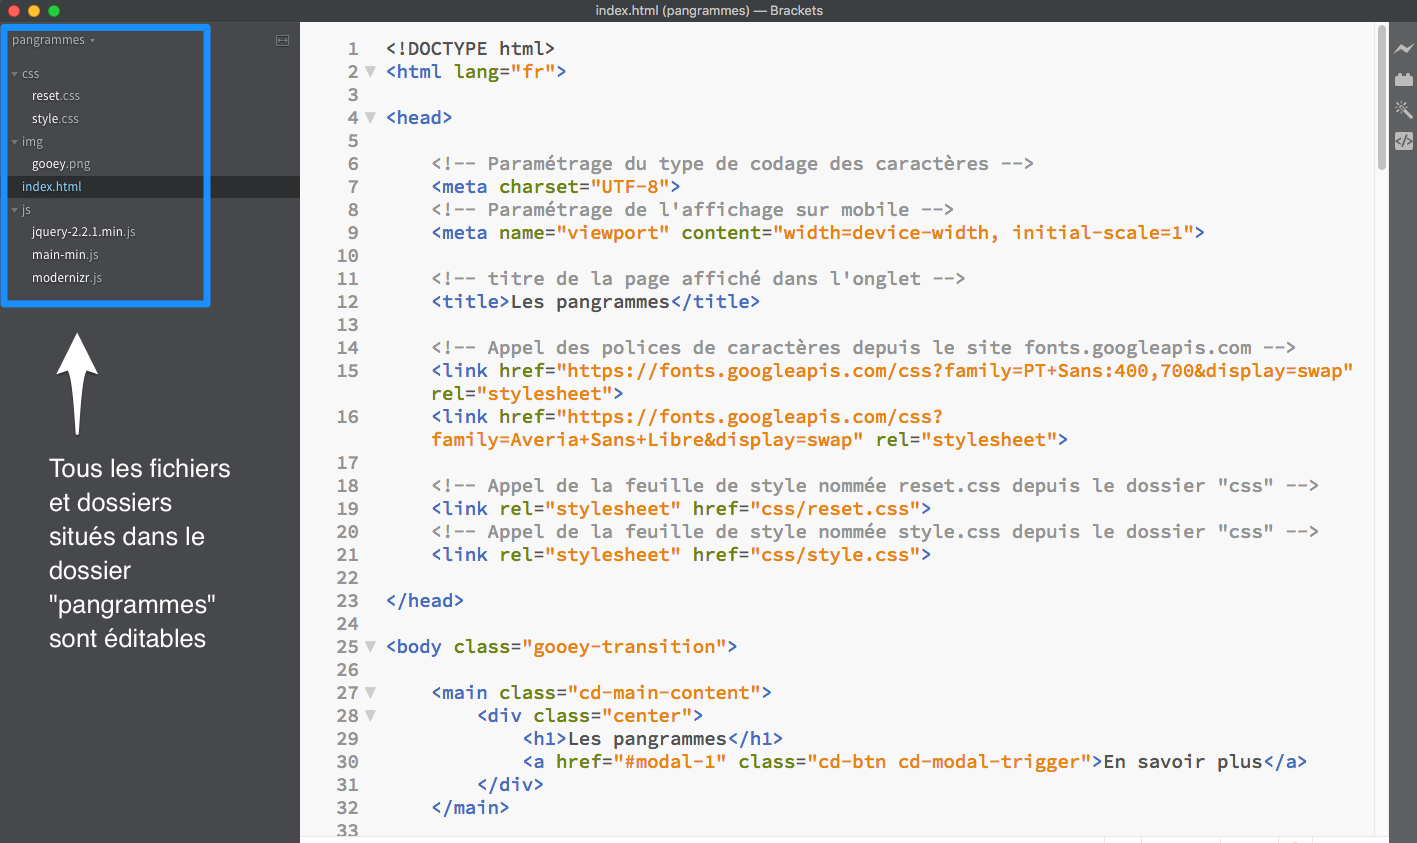 Capture d'écran du code source affiché dans Brackets